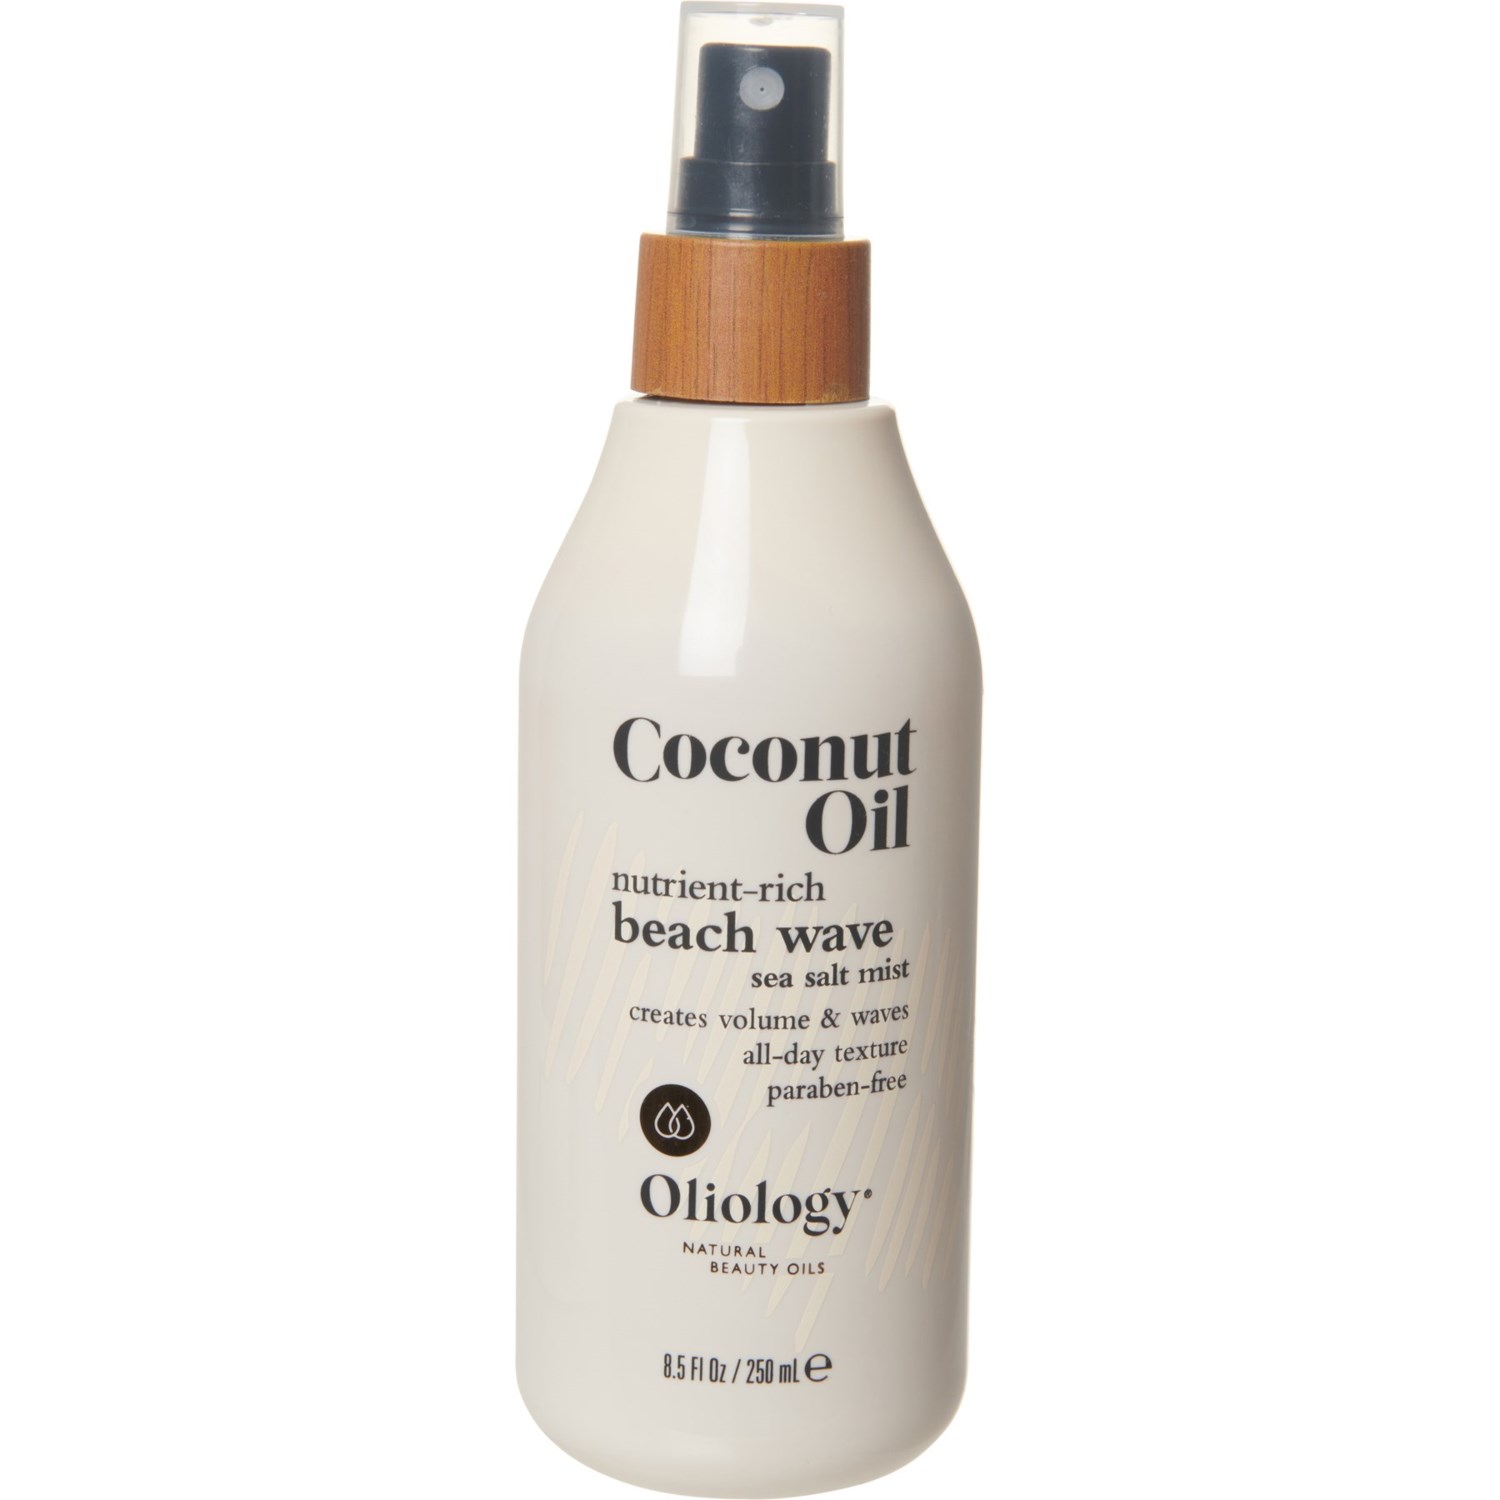 Oliology Beach Wave Sea Salt and Coconut Oil Mist - 8.5 oz. - Save 25%